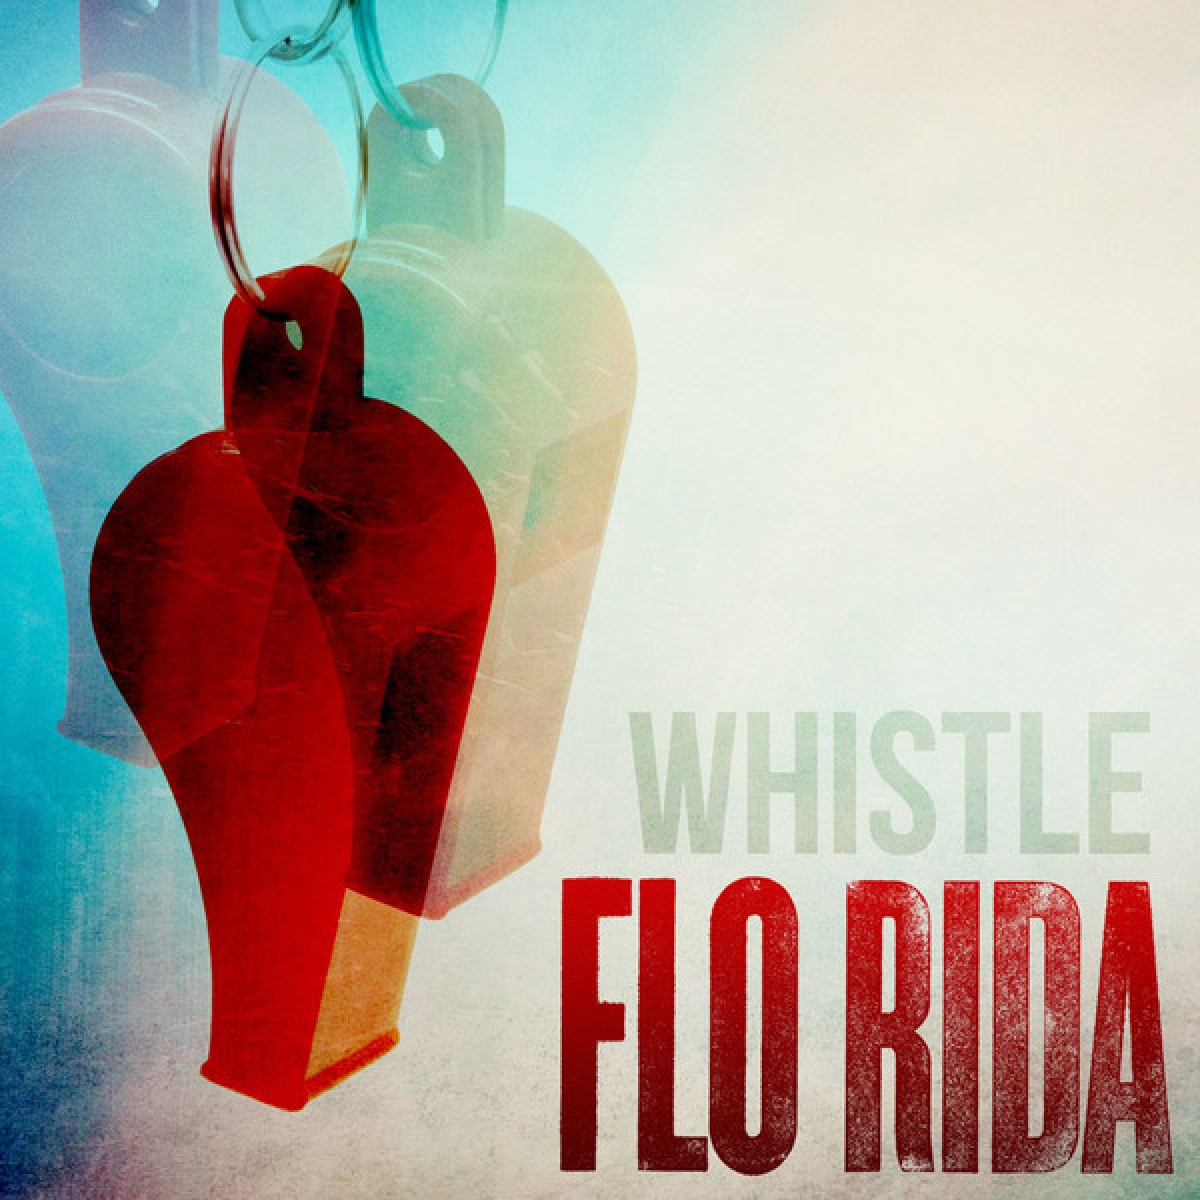 FLO RIDA - Whistle